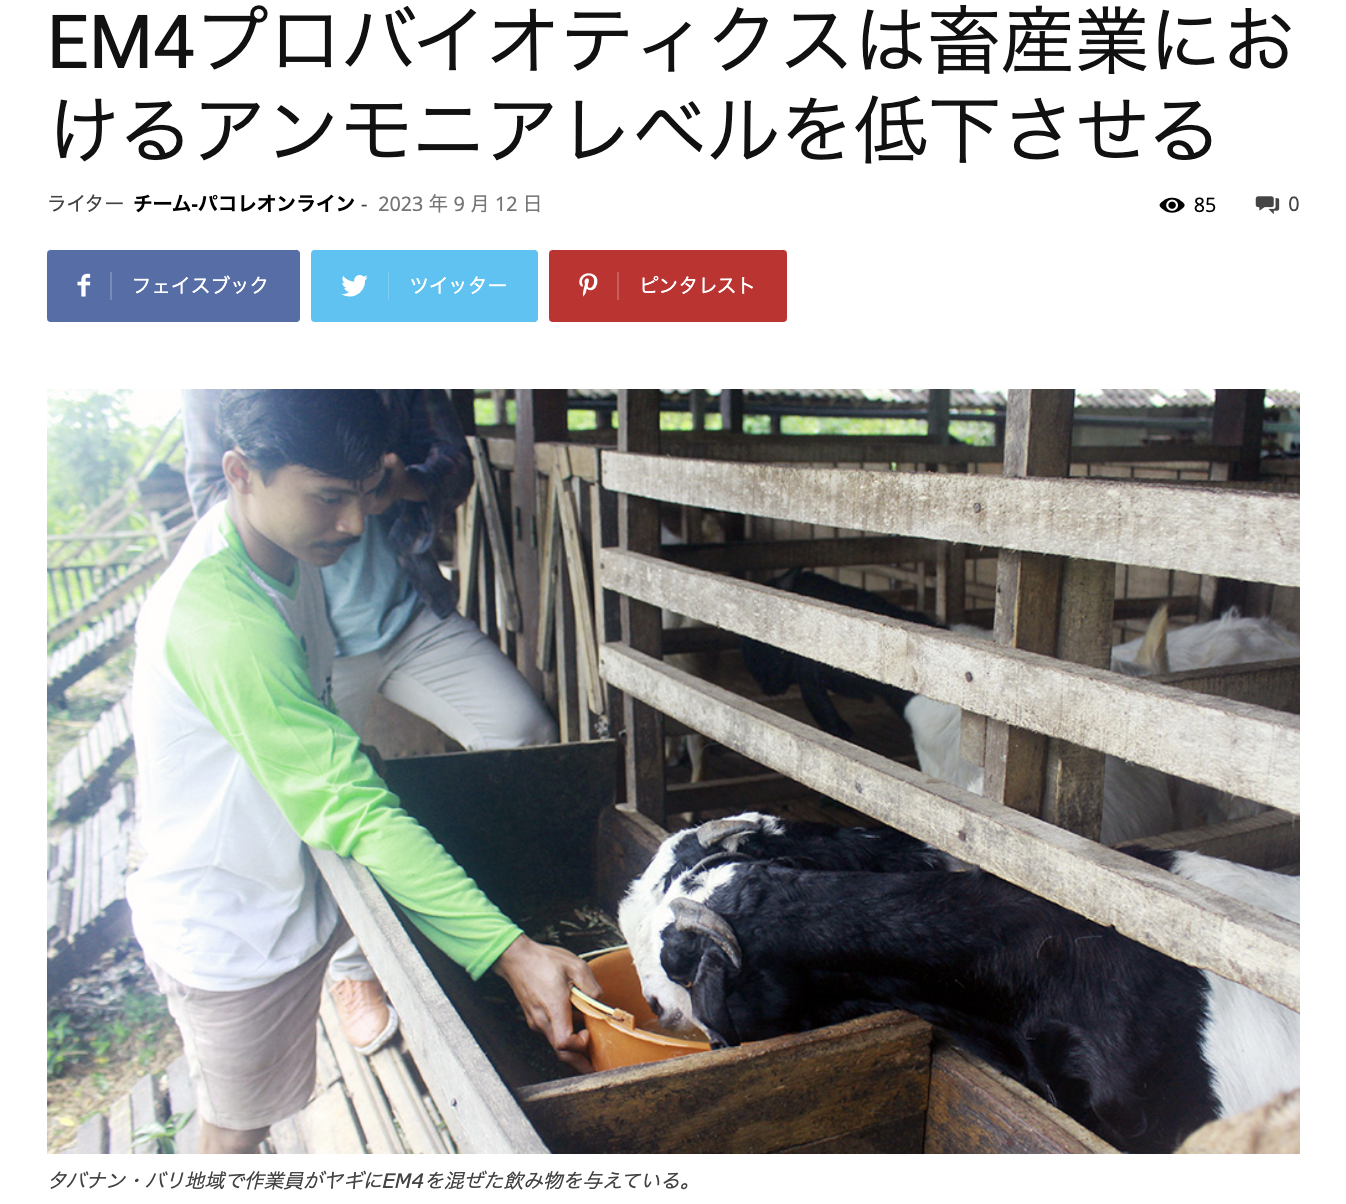 インドネシア　EMを使った畜産のアンモニア対策などの記事を公開 | パクオレスオンライン